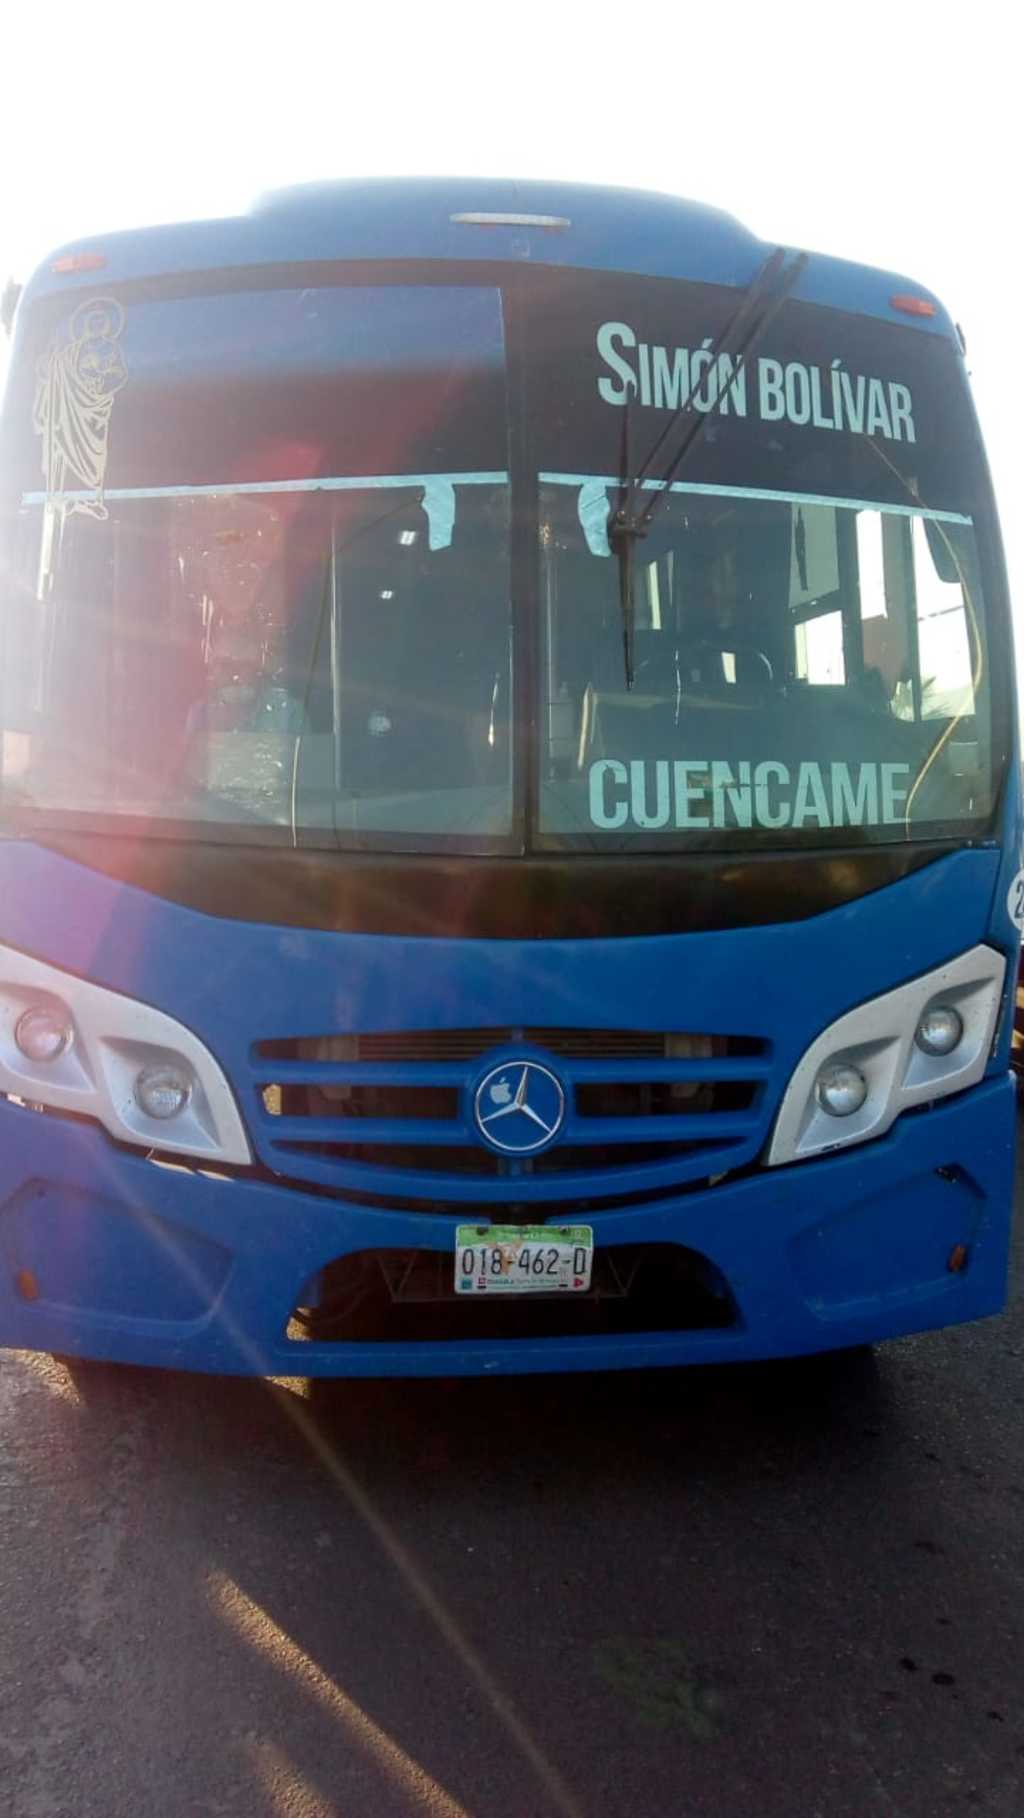 En incidente ocurrió en un camión de la marca Mercedes Benz color azul, el cual llevaba la ruta Simón Bolívar-Cuencamé. (EL SIGLO DE TORREÓN)